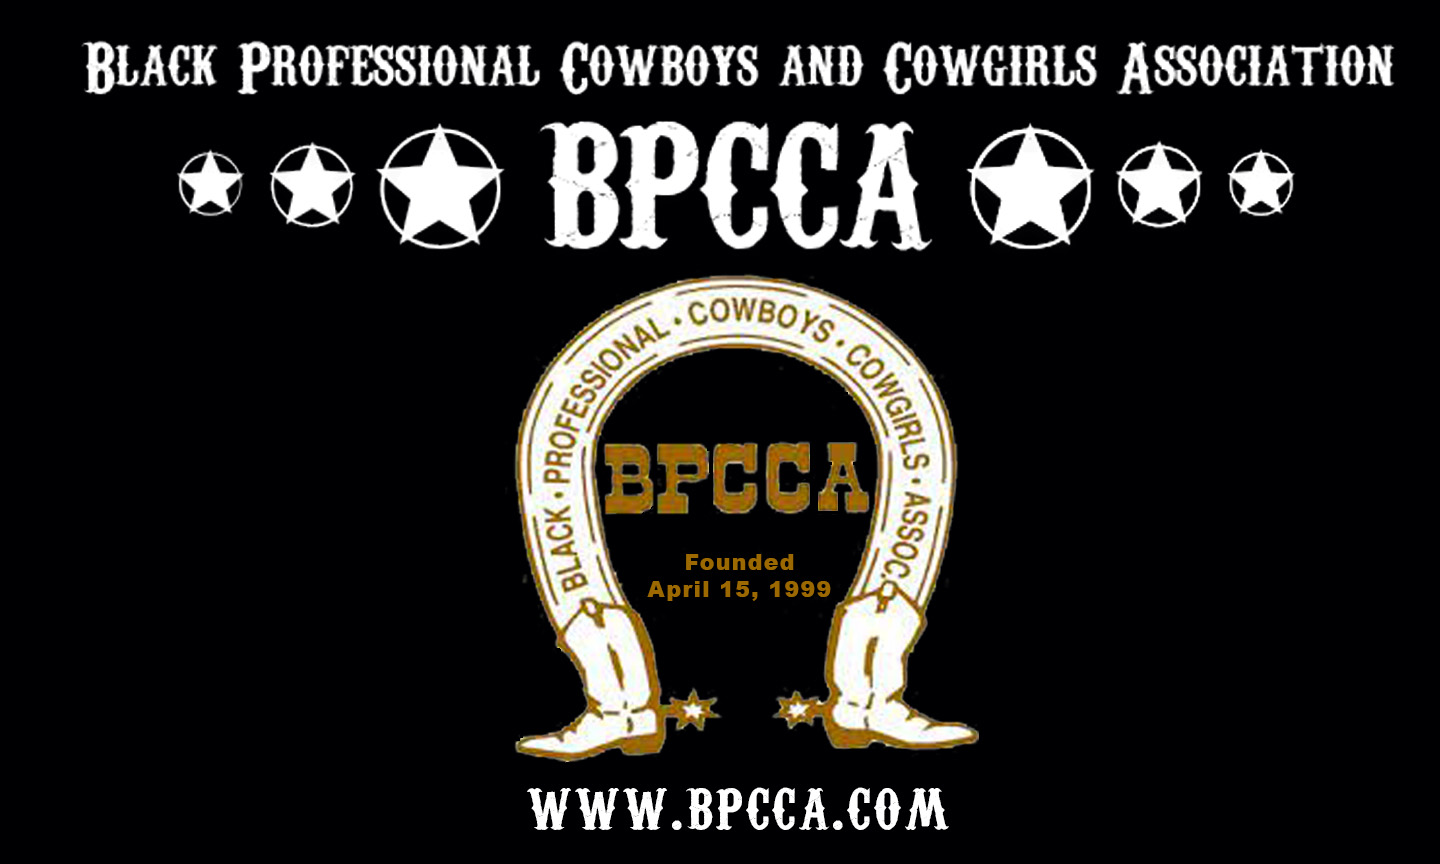 Black Professional Cowboys & Cowgirls Association